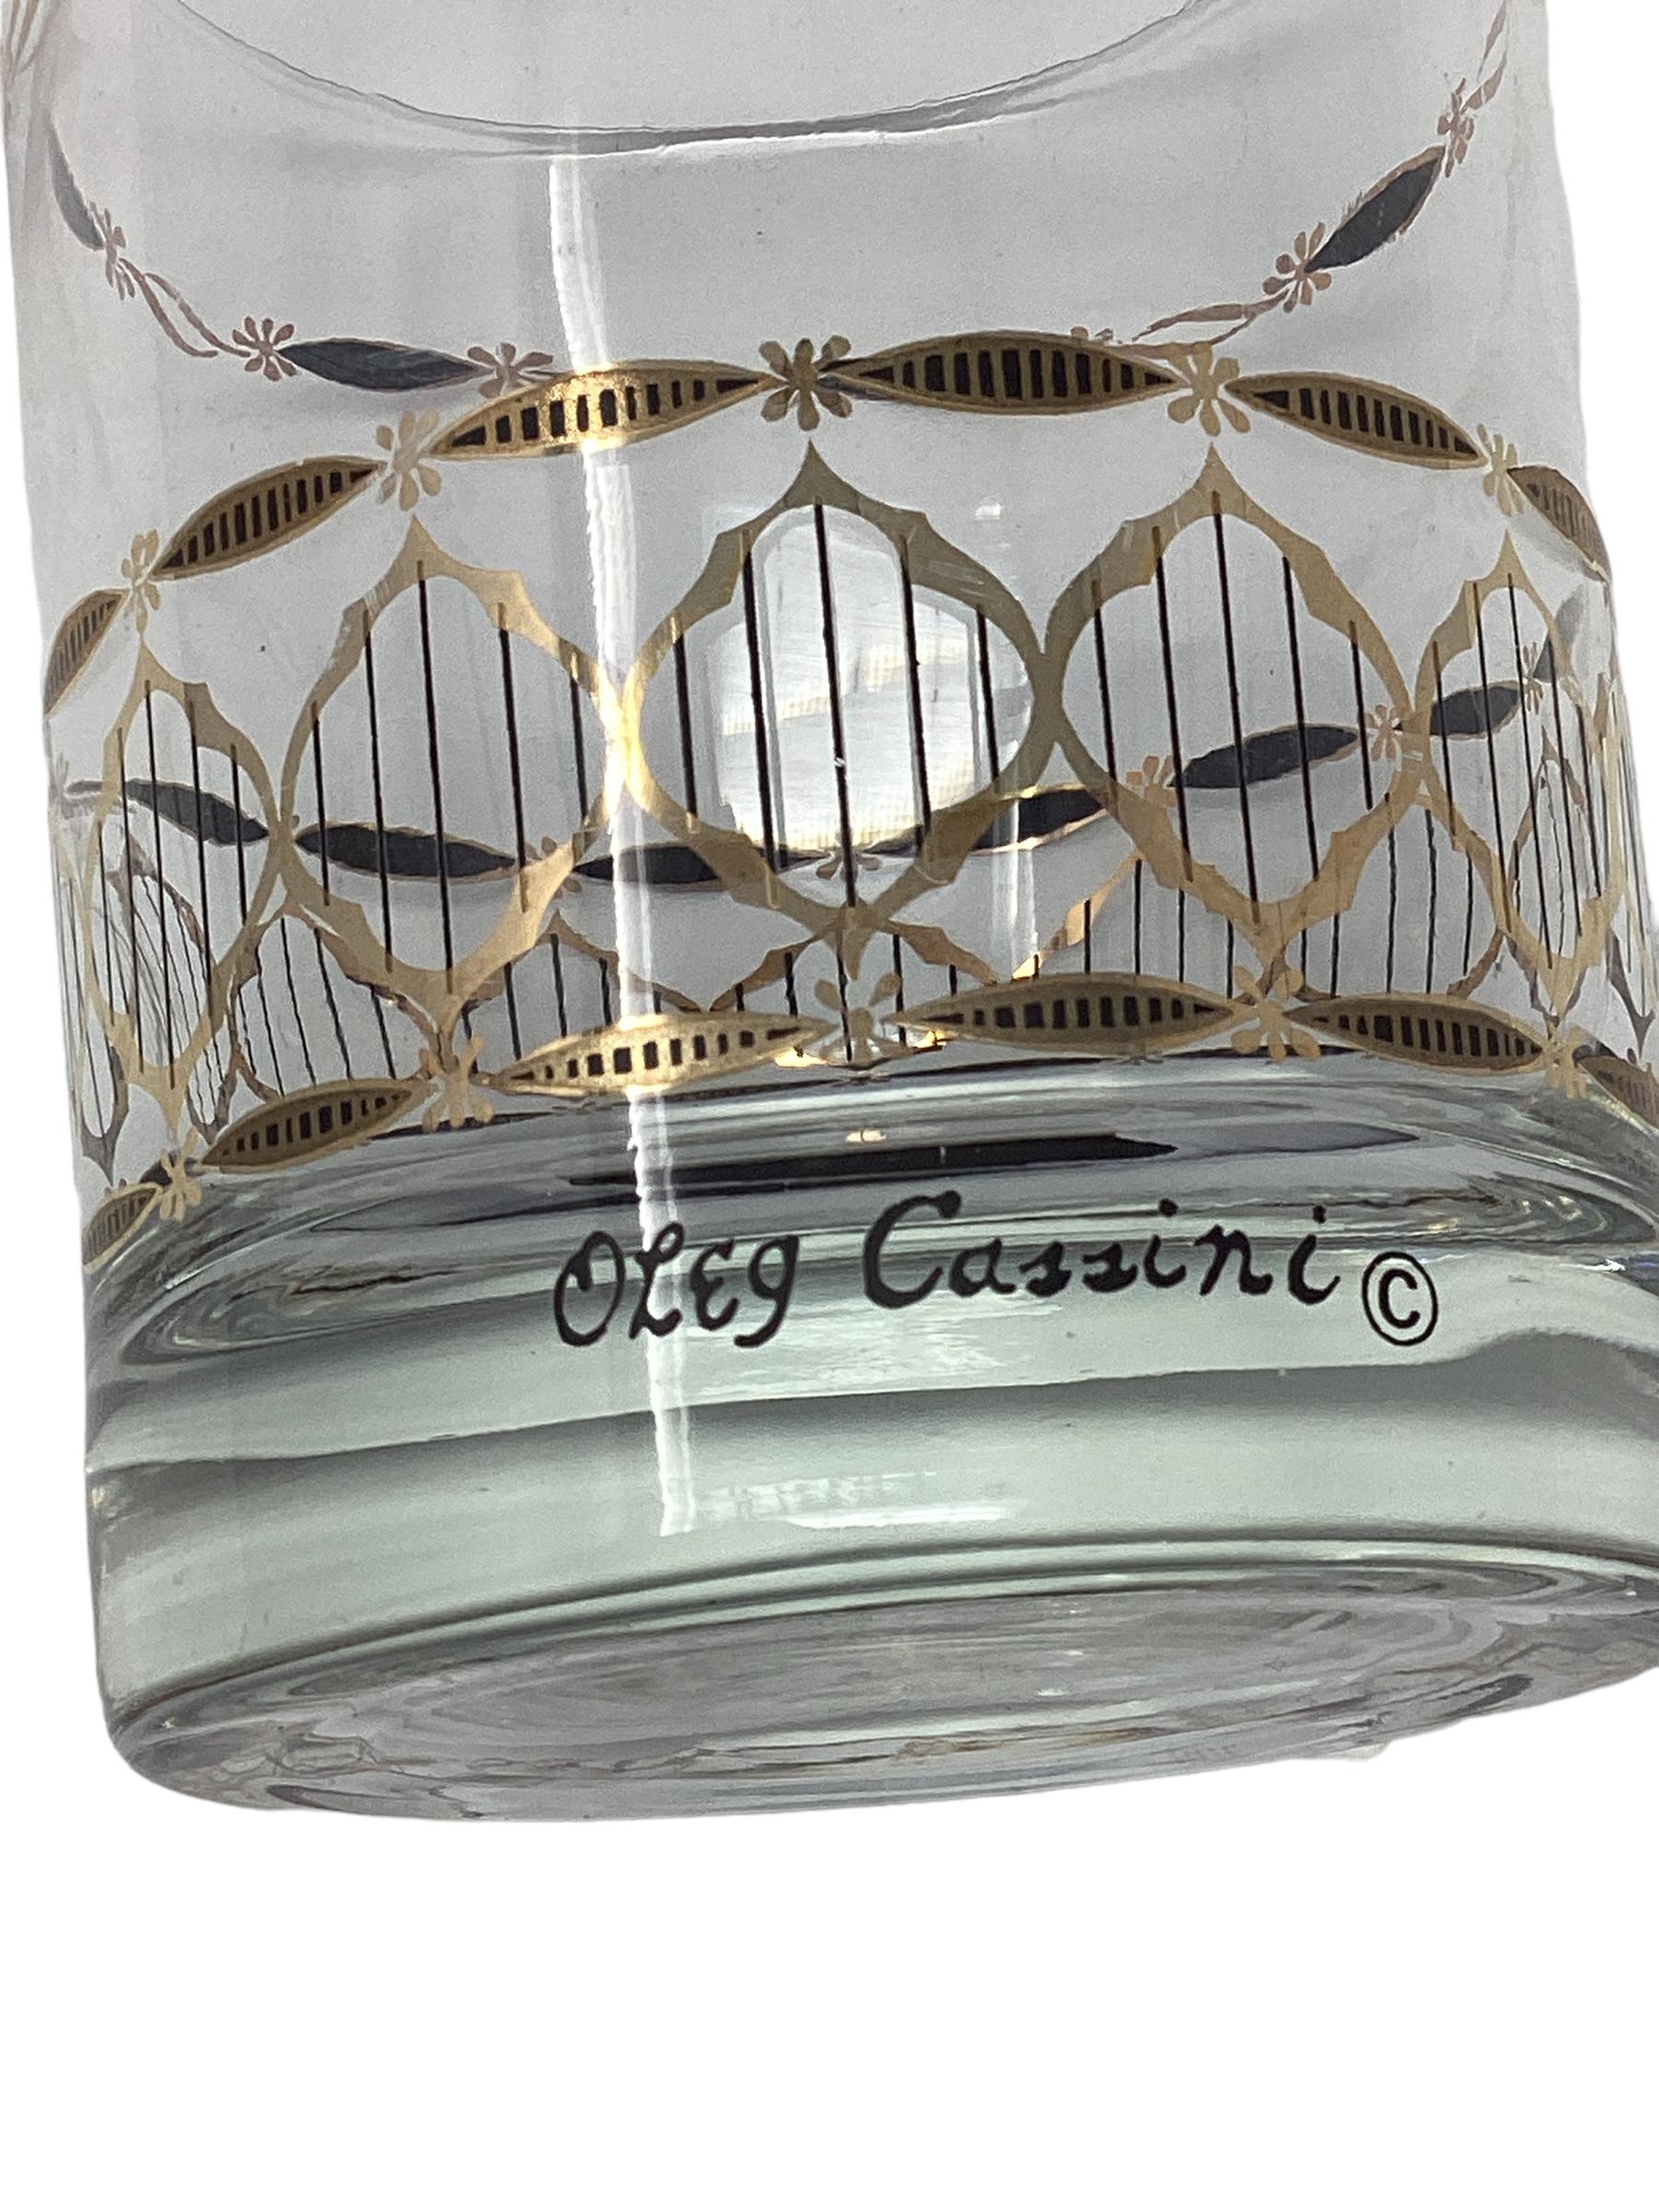 Set 6 Oleg Cassini Double Rocks Glasses. Oleg Cassini was the designer for Jackie Kennedy.